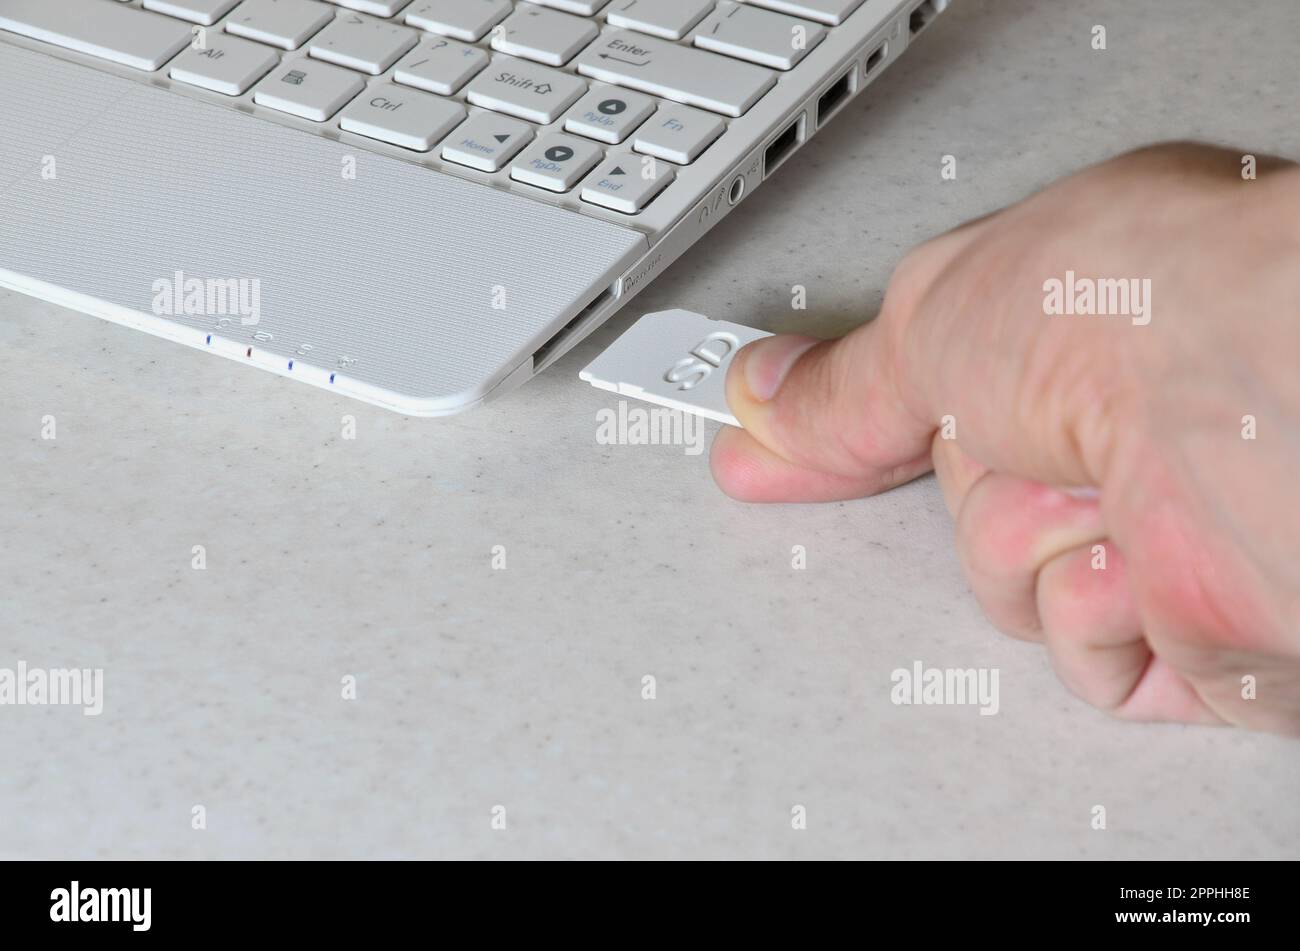 Una mano maschio inserisce una scheda SD compatta bianca nell'ingresso corrispondente sul lato del netbook bianco. L'uomo utilizza le moderne tecnologie per memorizzare la memoria e i dati digitali Foto Stock